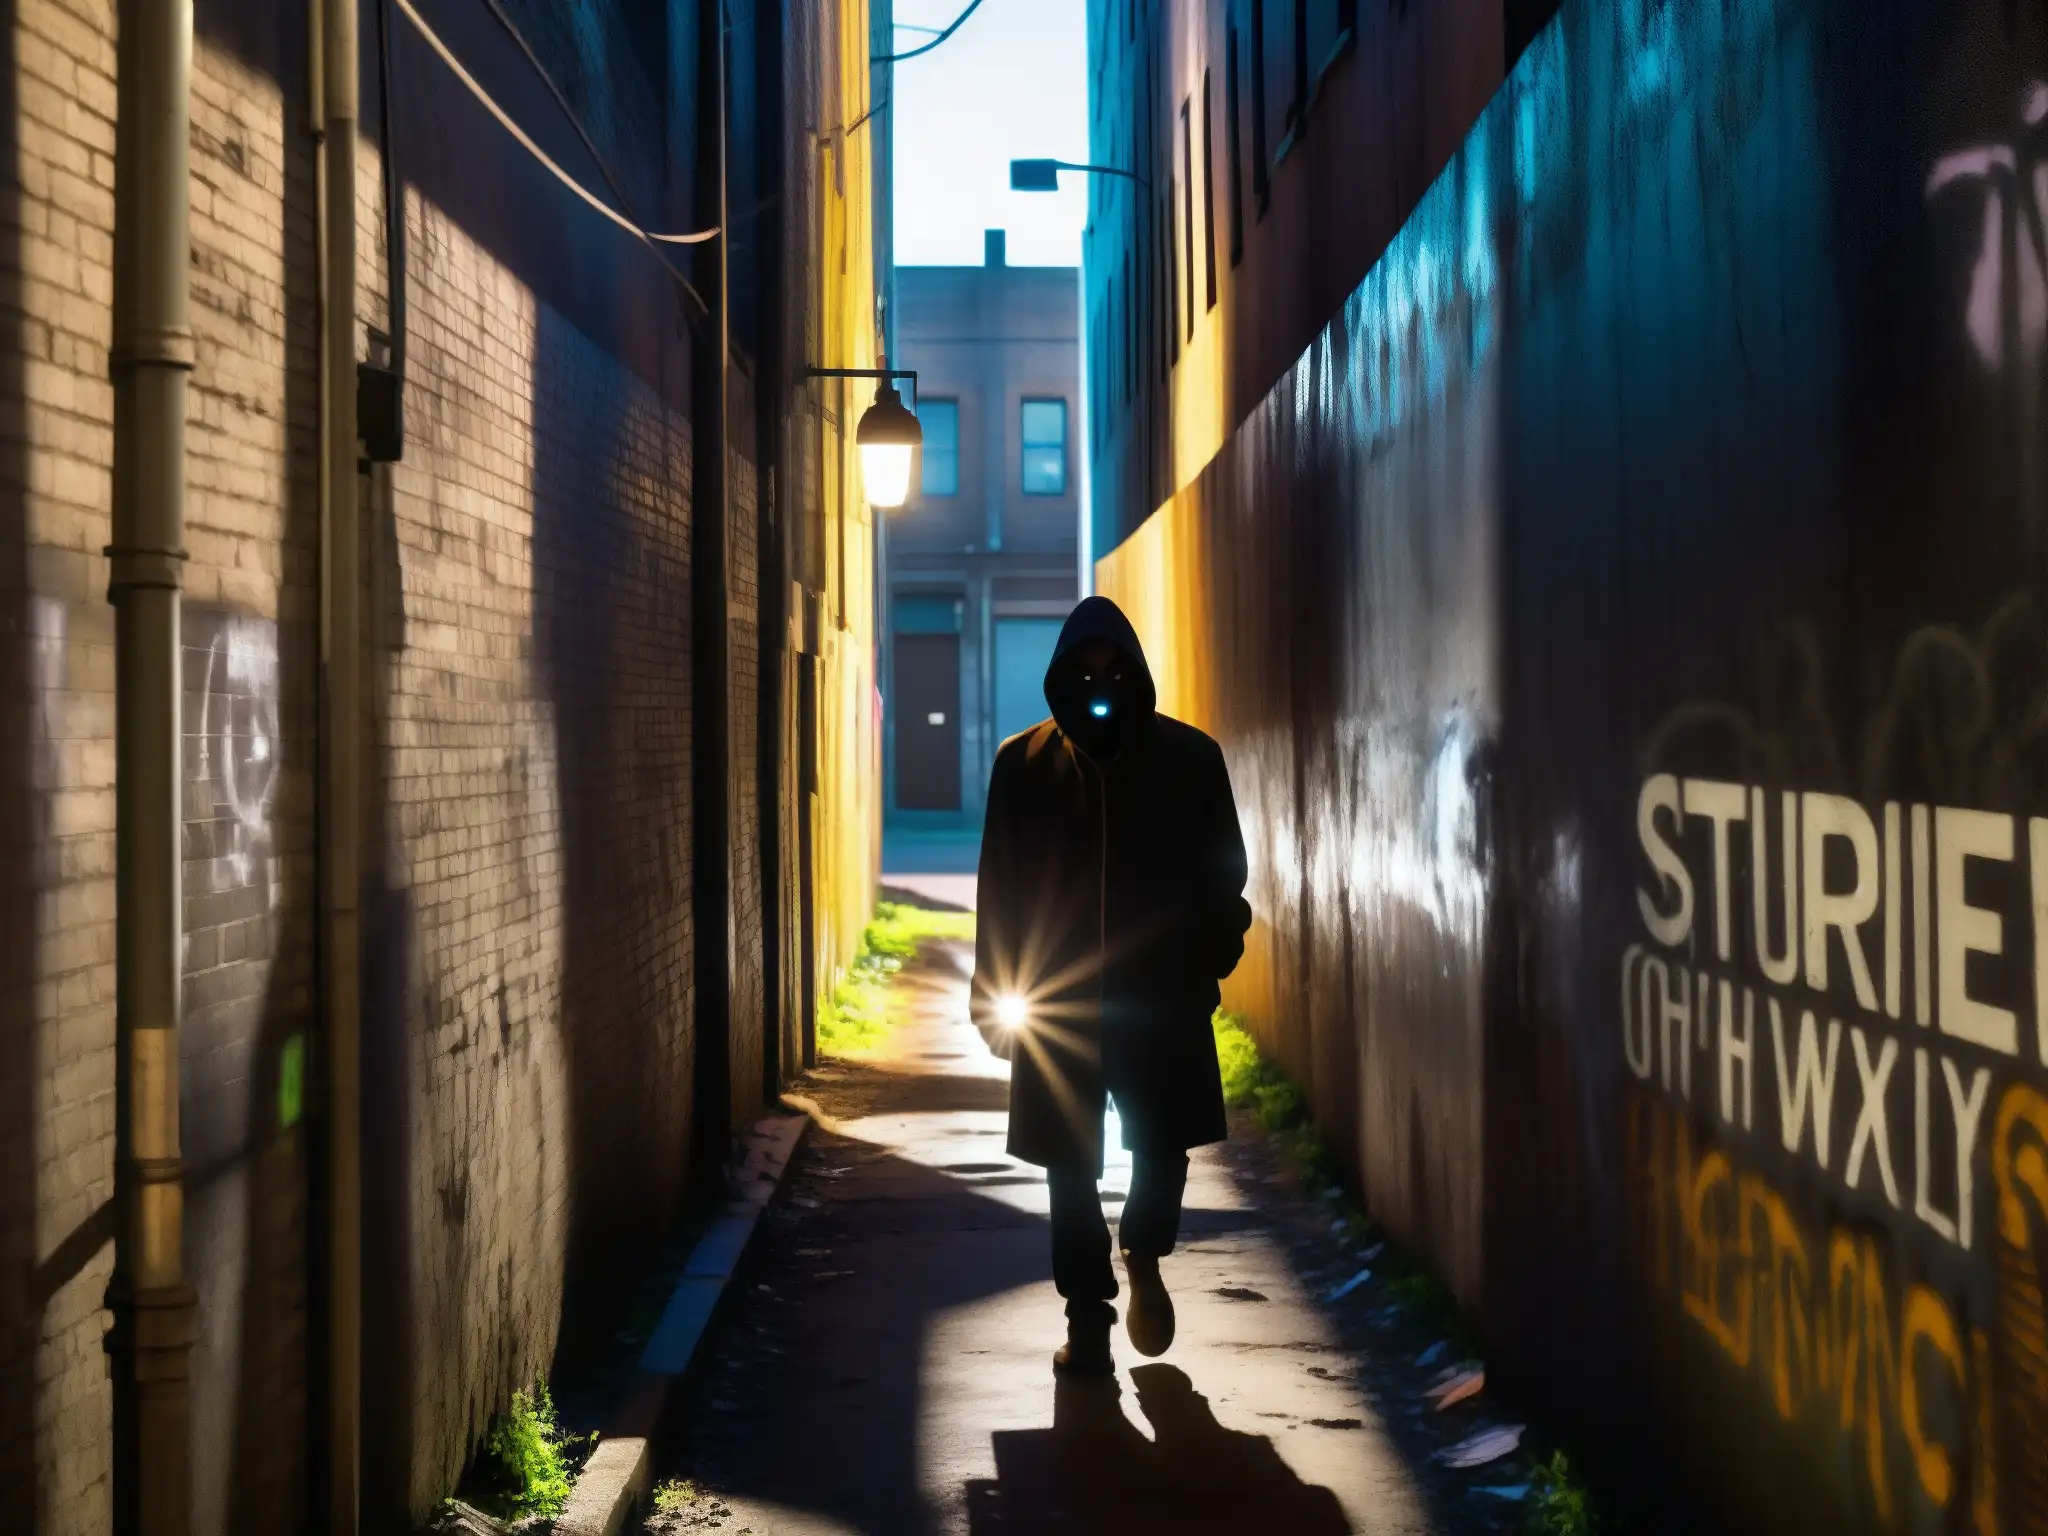 Un callejón sombrío y siniestro en la ciudad, con grafitis y una luz parpadeante que proyecta largas sombras